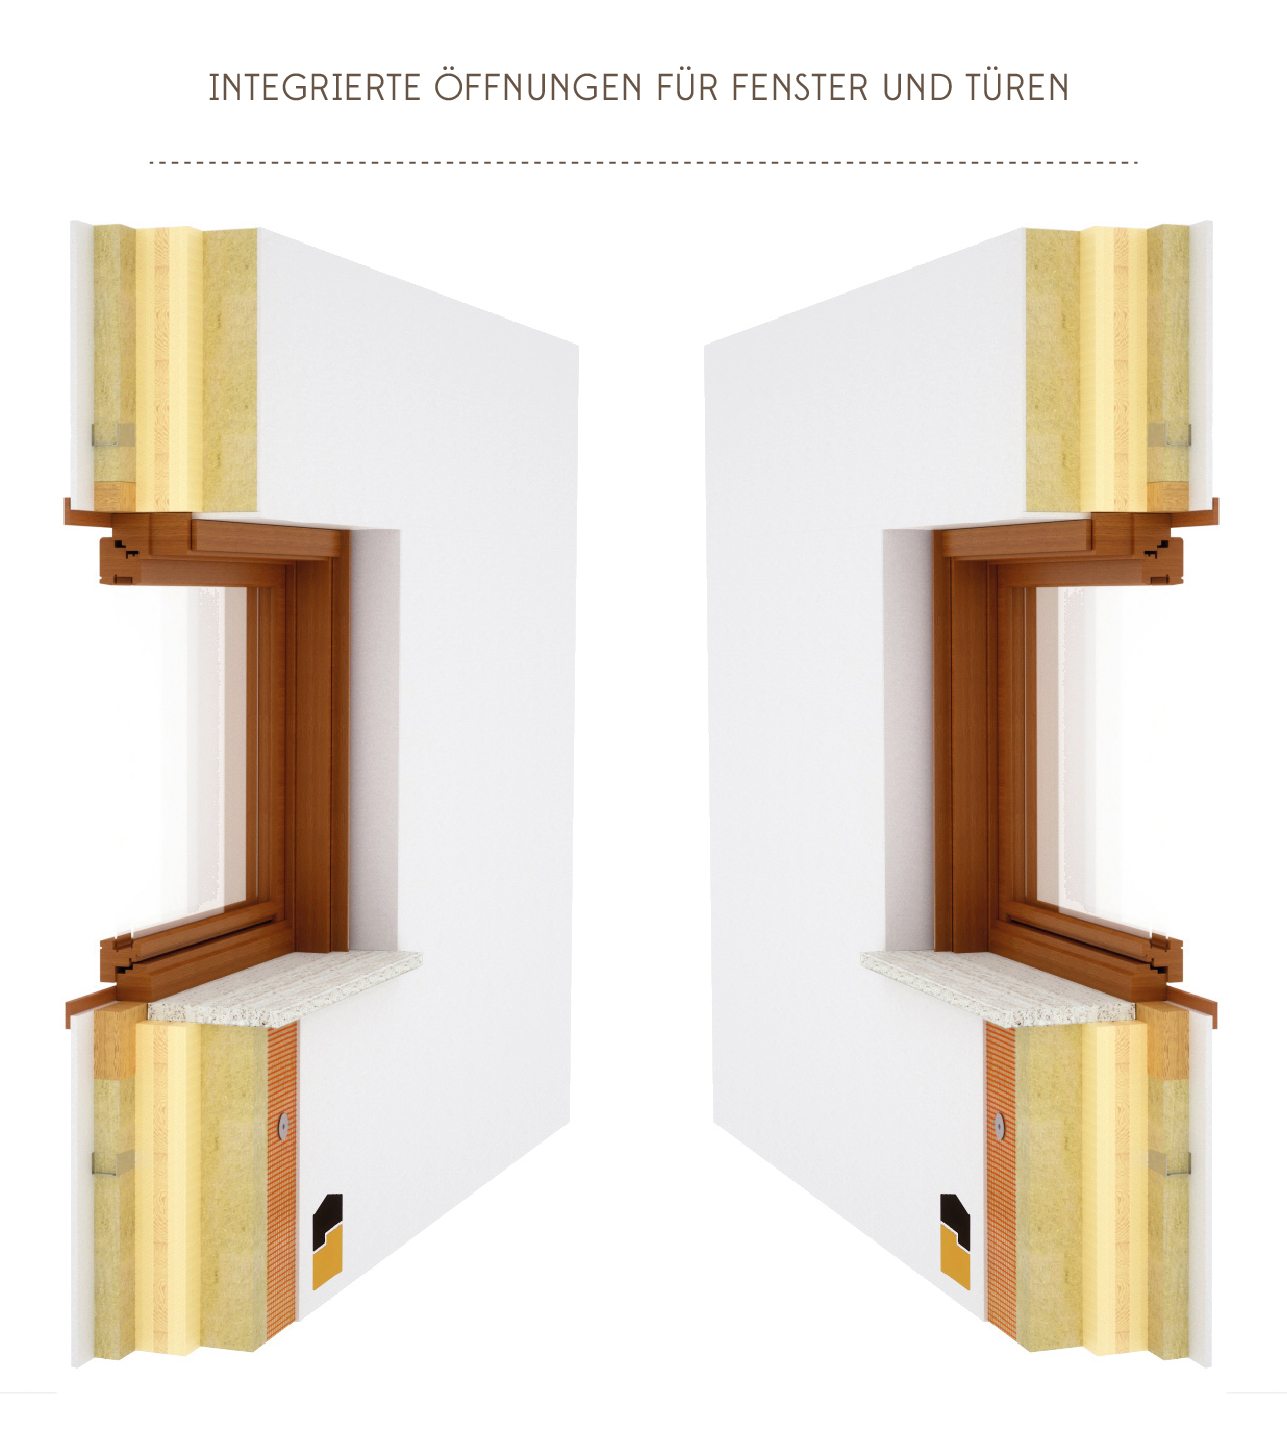 Integrierte Öffnungen Für Fenster Und Türen